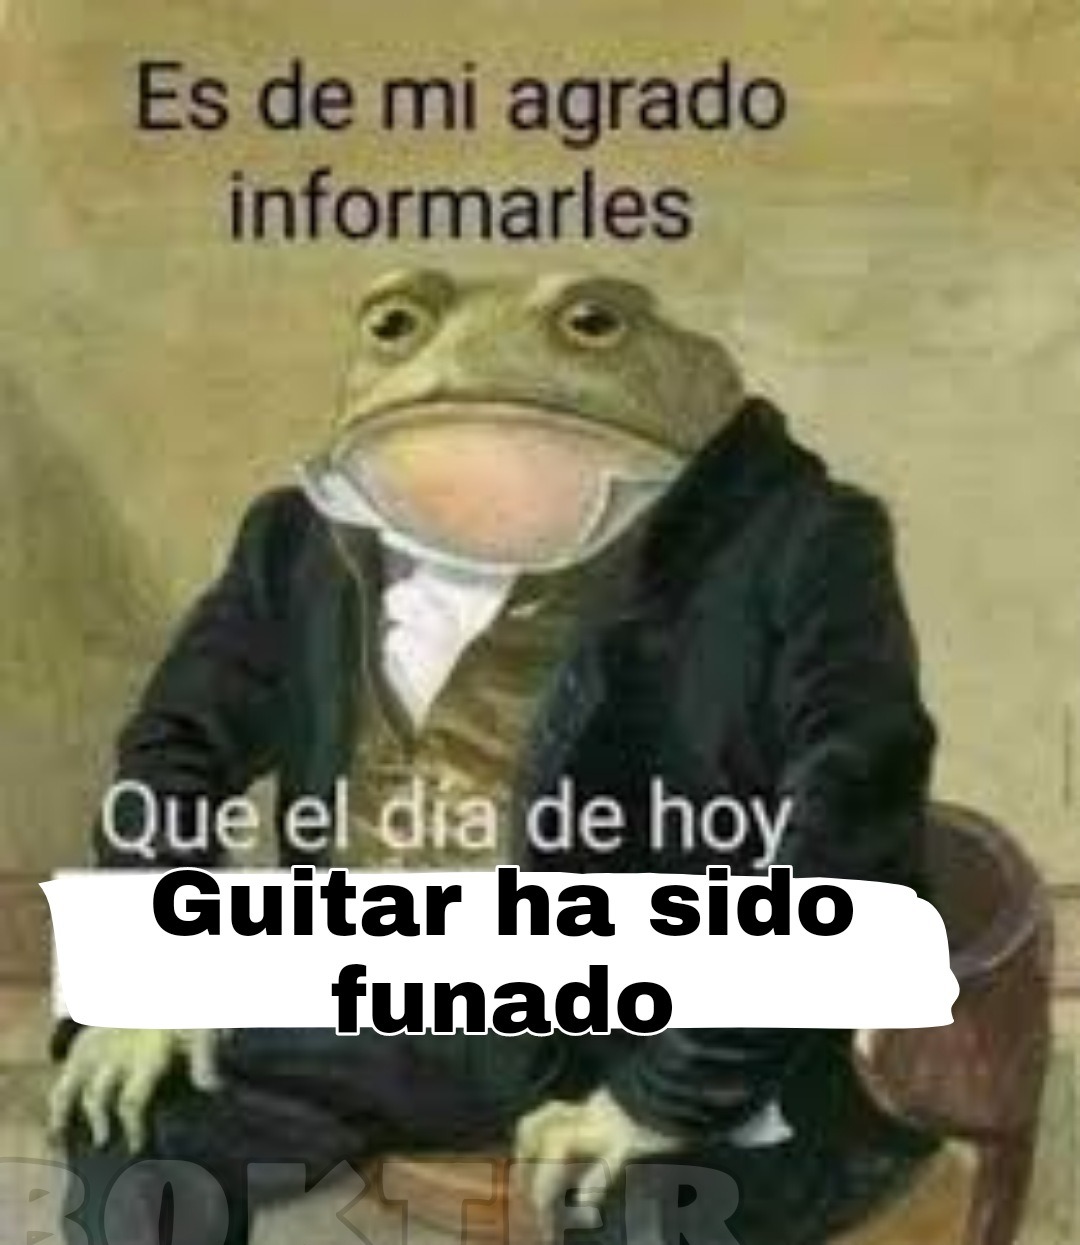 Rip guitar - meme